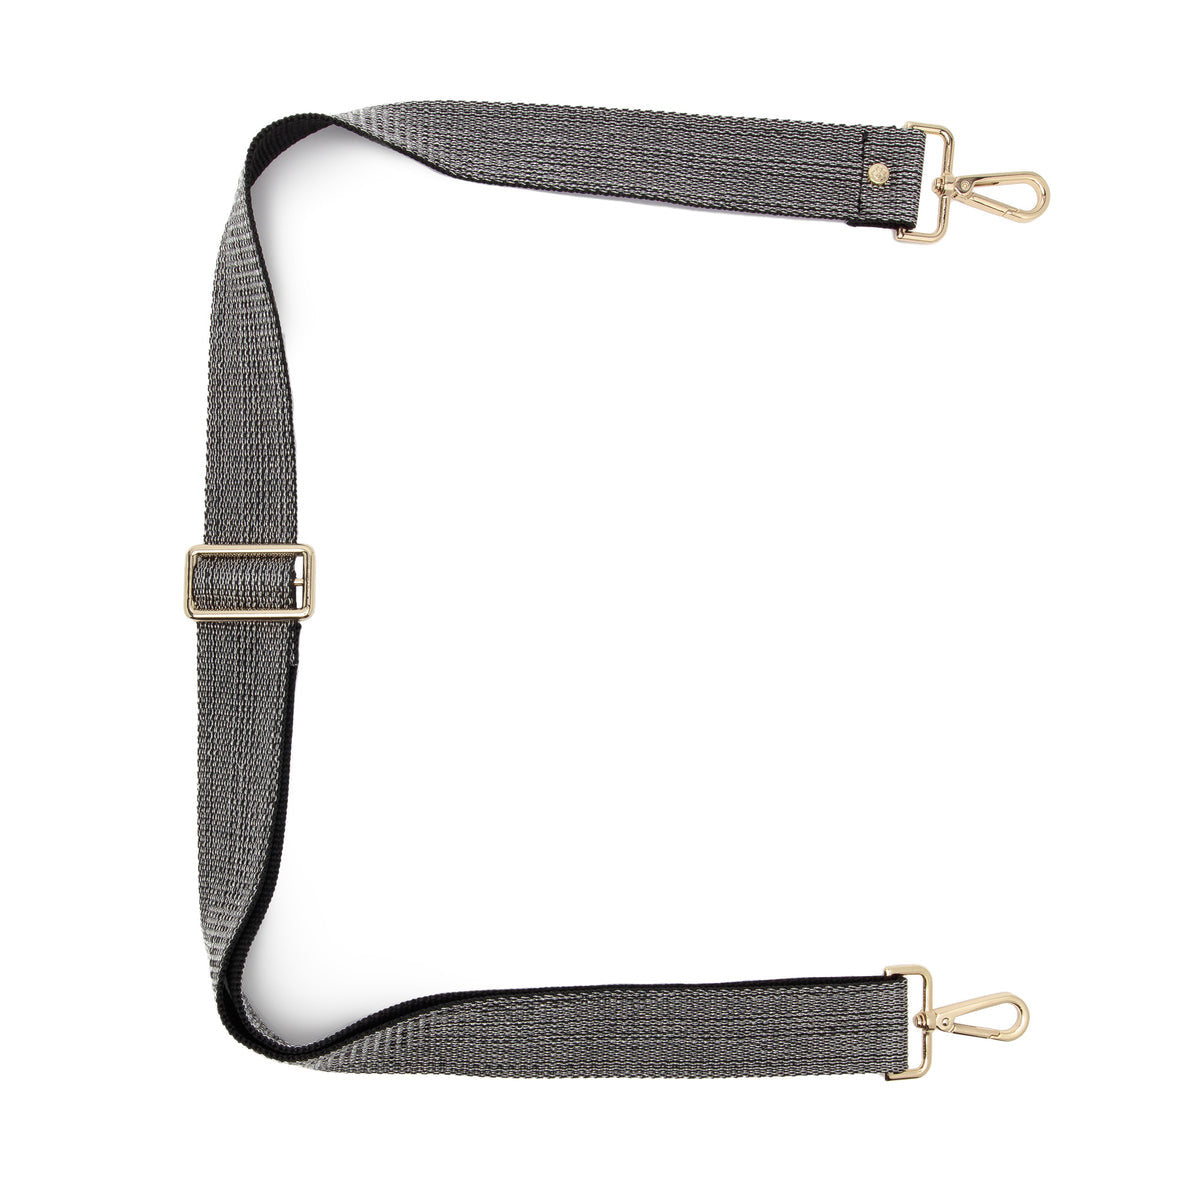 Elie Beaumont Designer BLACK GLAM Adjustable Crossbody Bag Strap (GOLD Fittings)